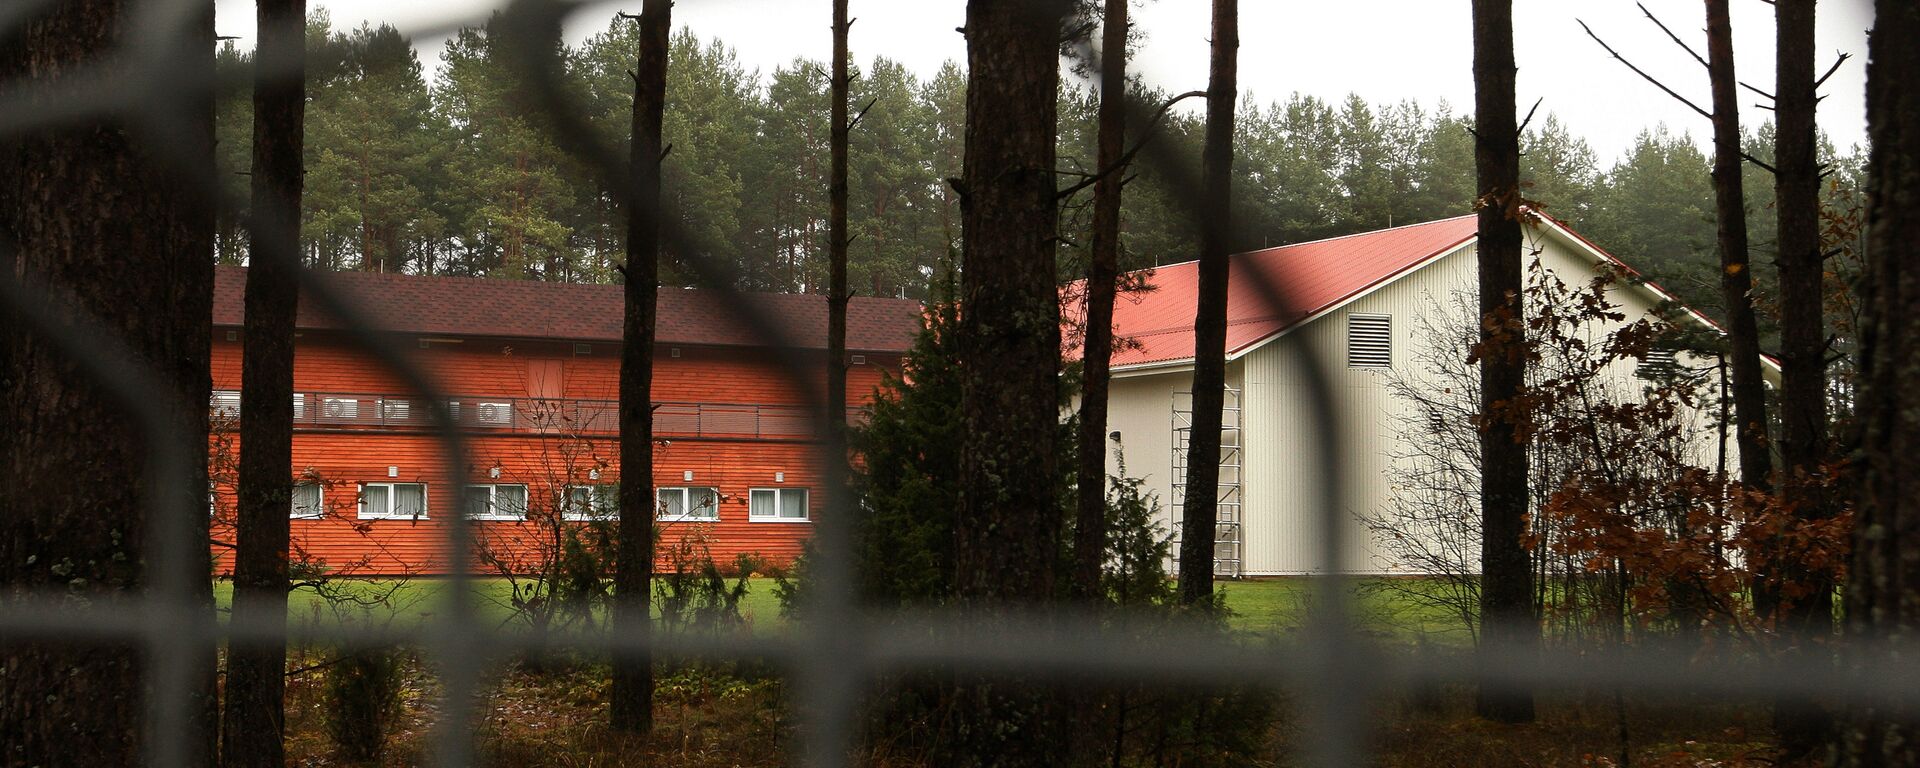 Предполагаемая тюрьма ЦРУ в Антавиляй, ноябрь 2009 года - Sputnik Латвия, 1920, 09.10.2018